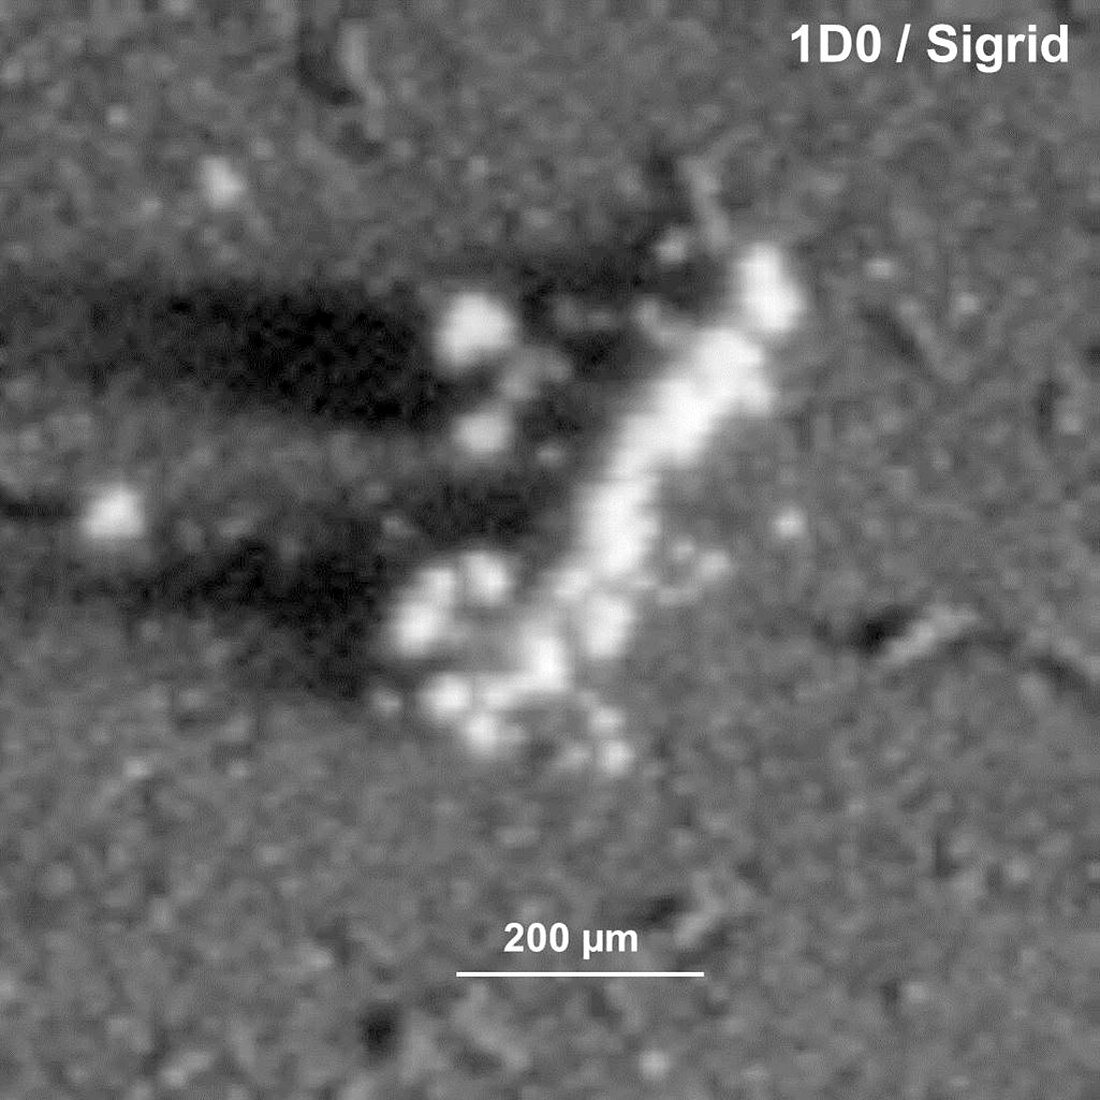 Comet Churyumov-Gerasimenko dust